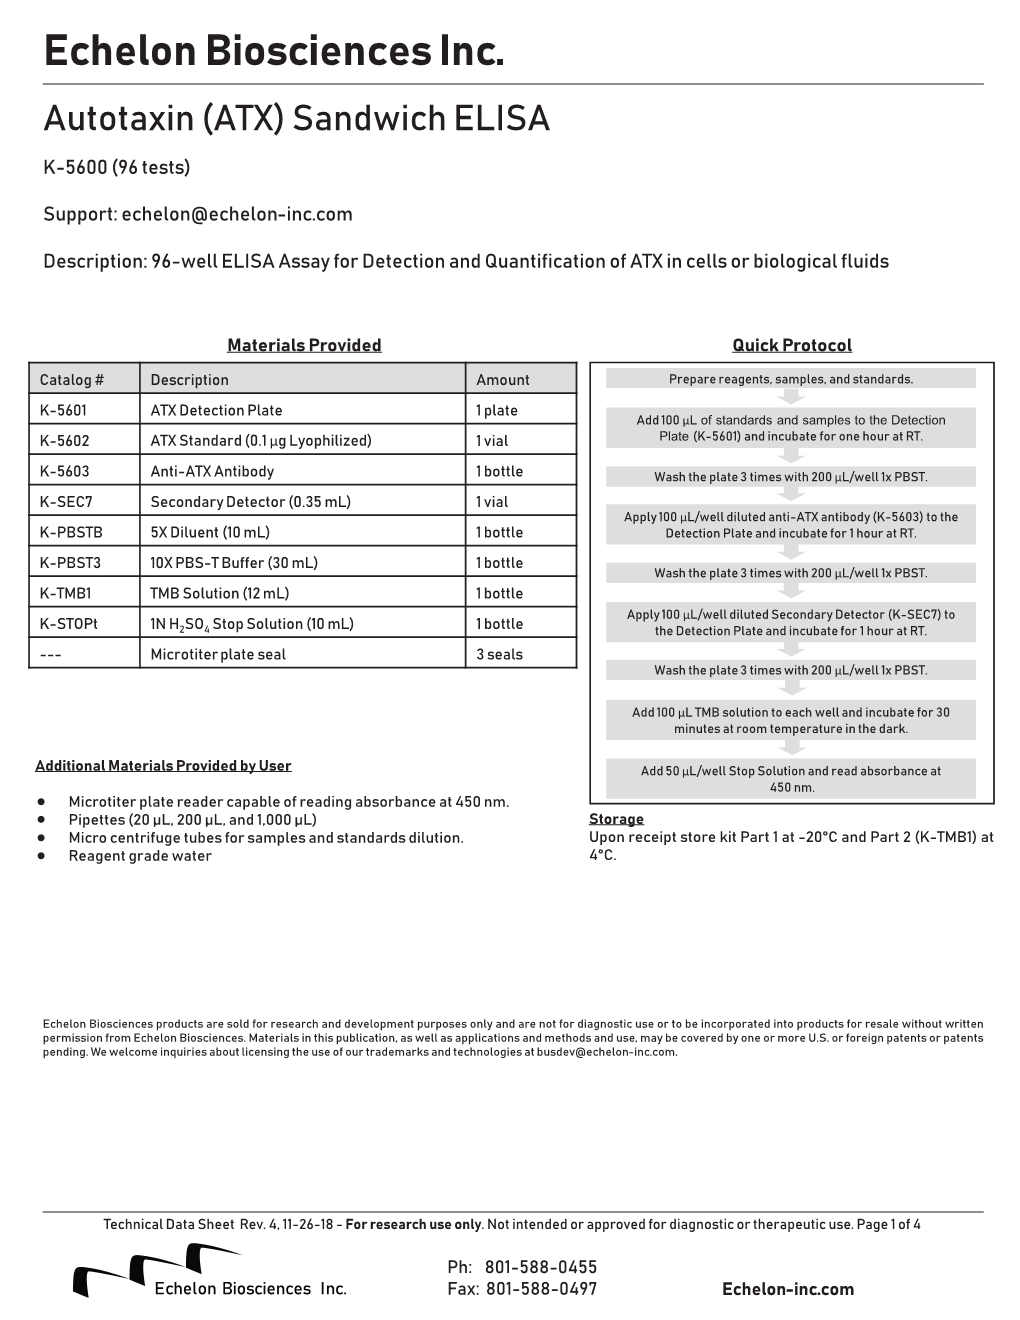 K-5600 Technical Data Sheet (TDS)